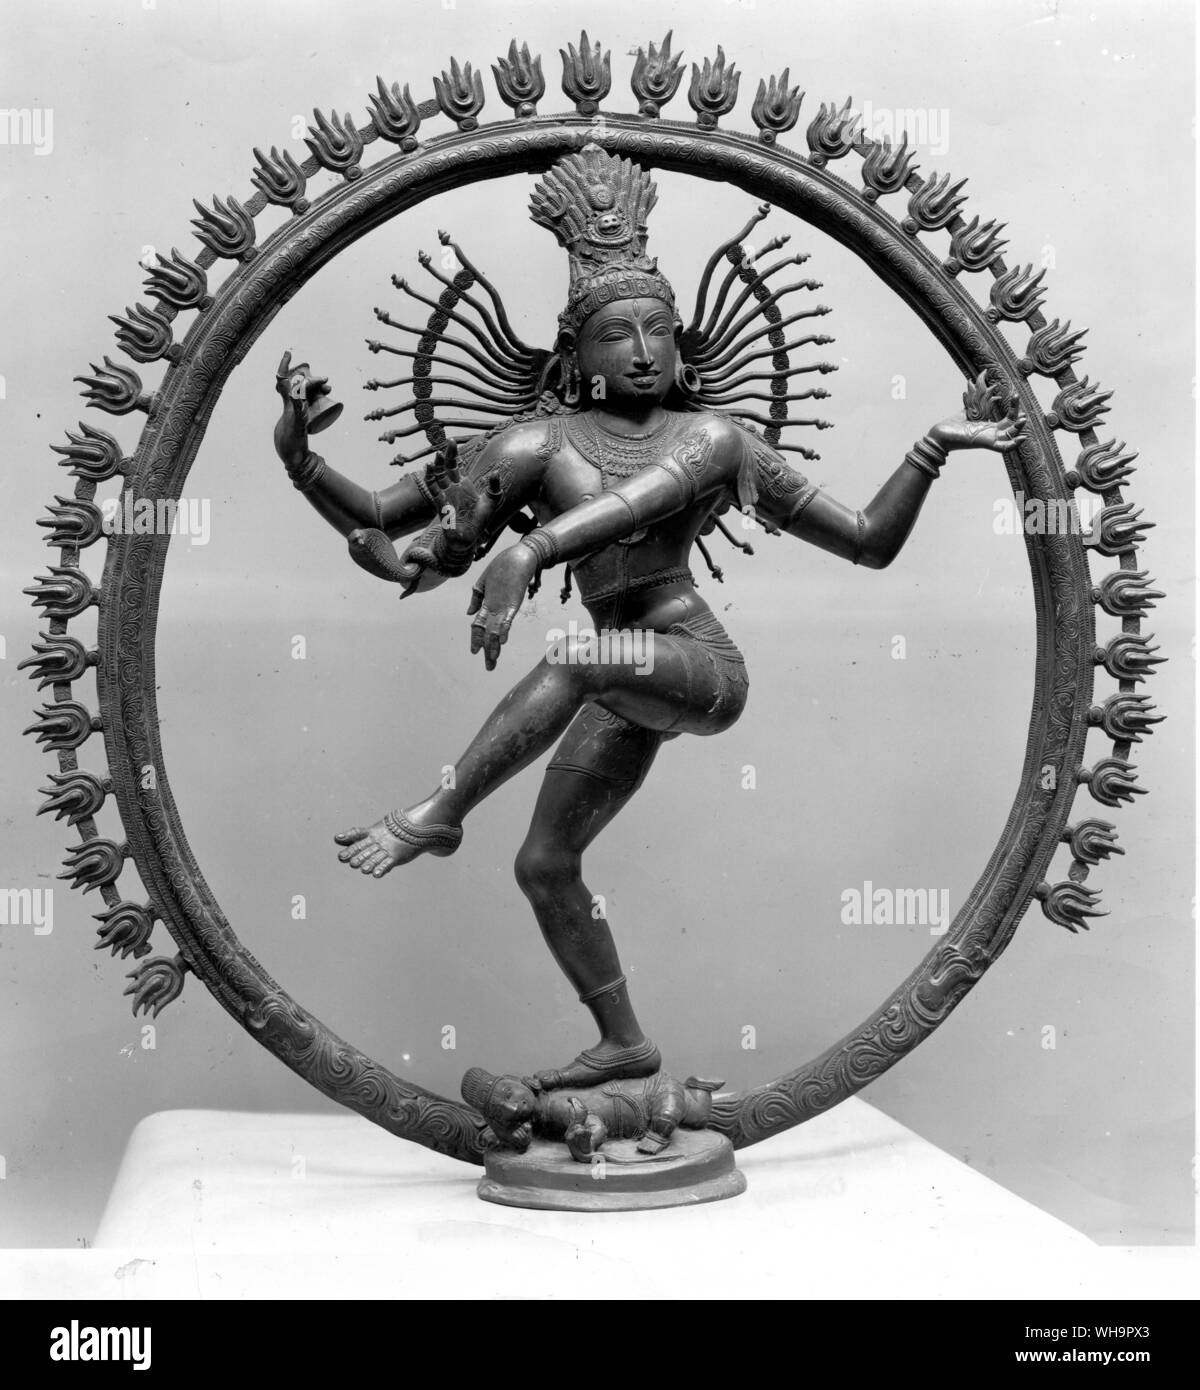 Le dieu indien Shiva, le Destructeur, l'exécution de la danse de la mort Banque D'Images